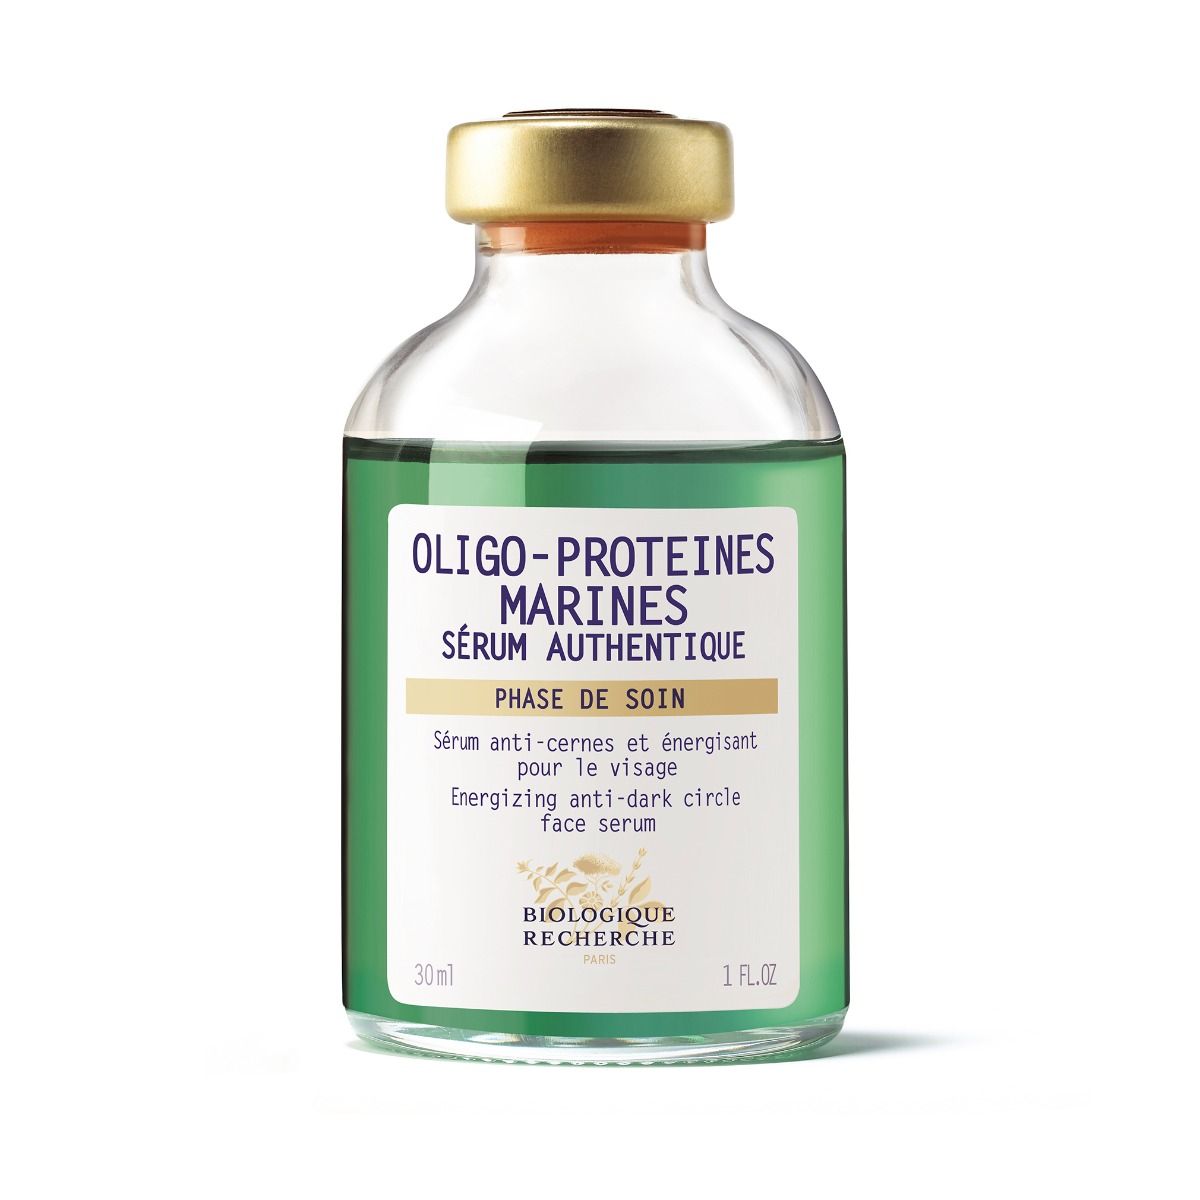 Biologique Recherche Oligo-Proteines Marines Serum